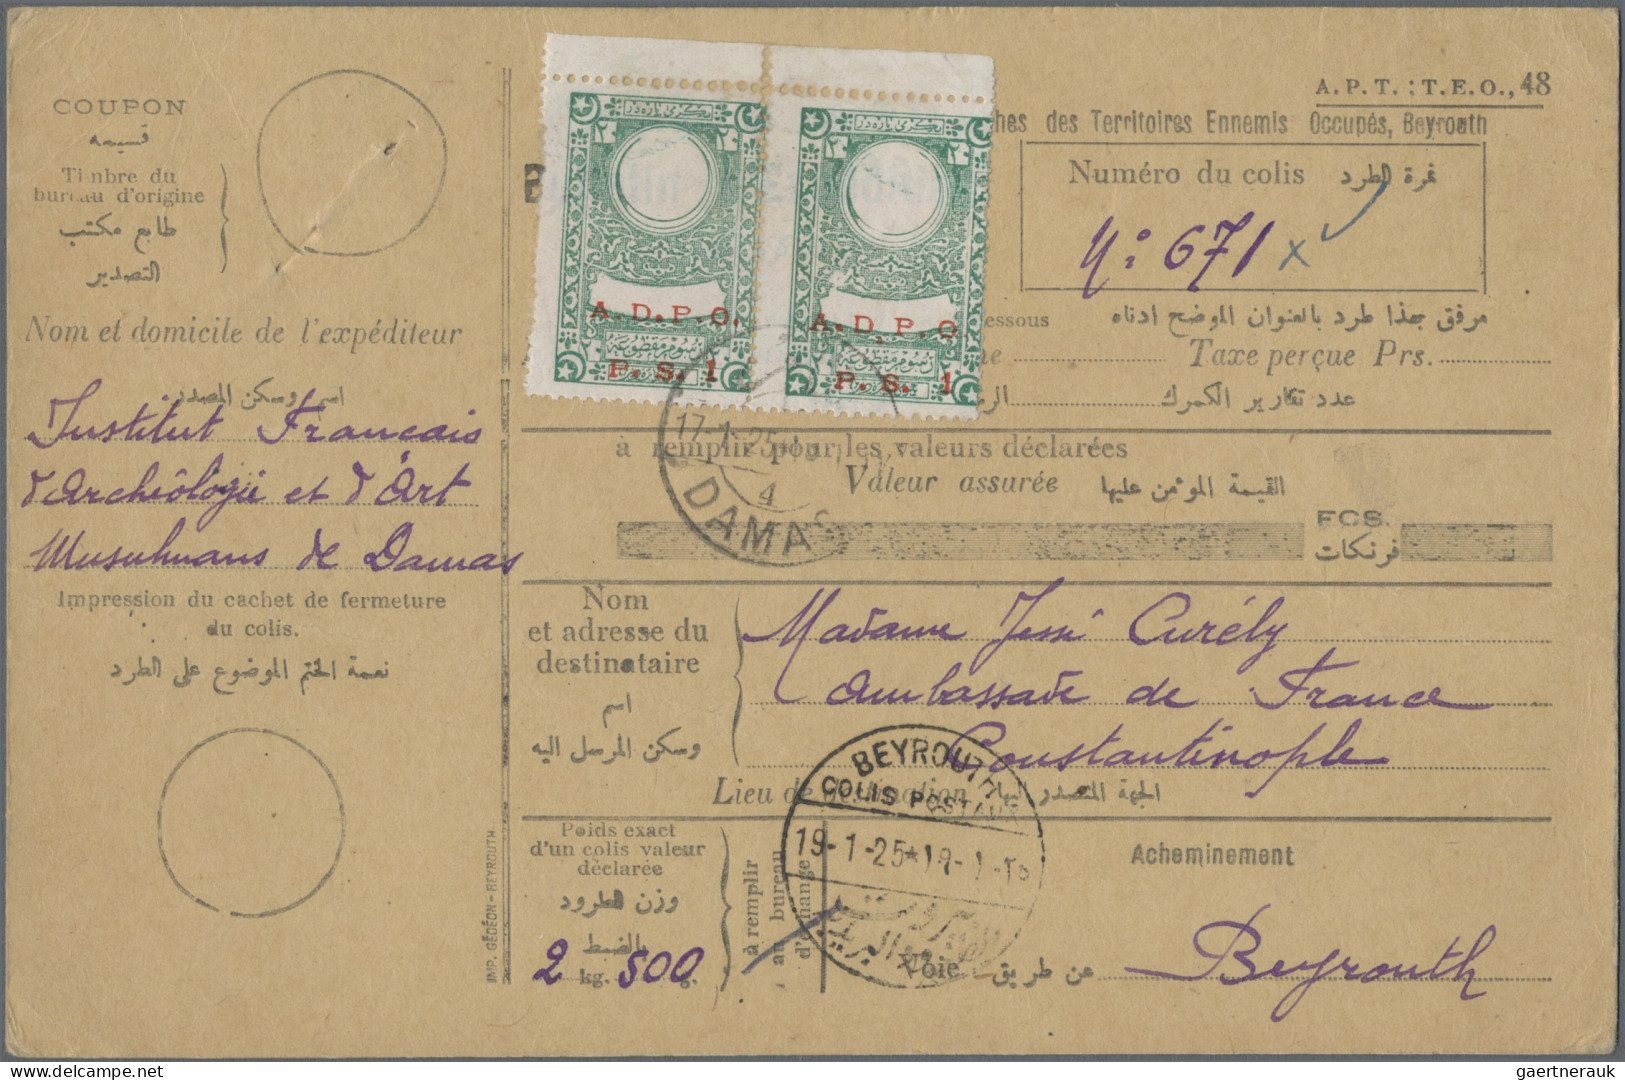 Turkey: 1894/1922 (ca.), Osman Empire, 50+ covers/stationery. majority ppc inc.